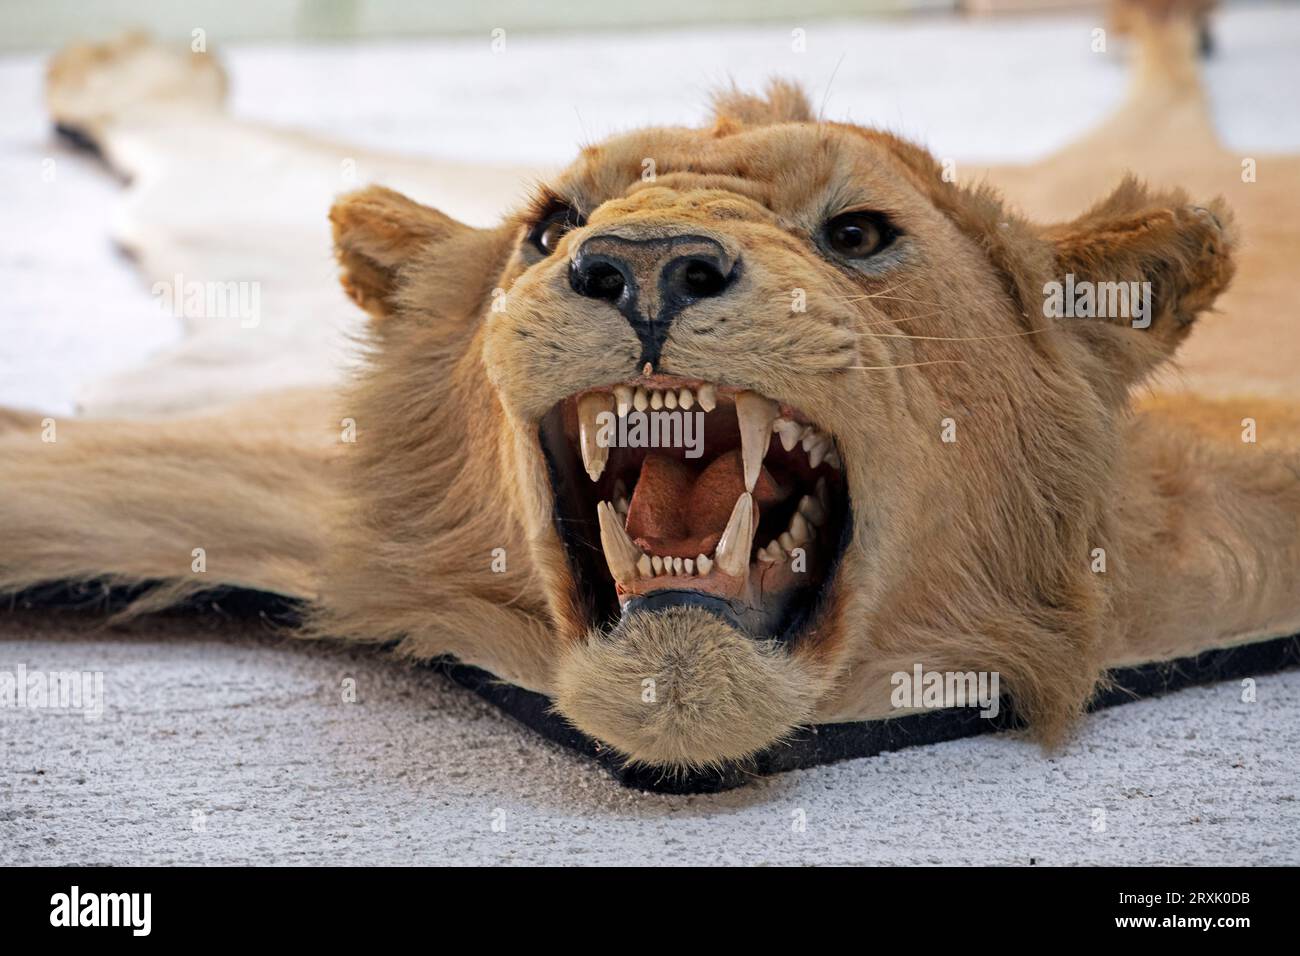 Nahaufnahme eines offenen Mundes mit Zähnen eines weißen Tigers, angefüllt Stockfoto